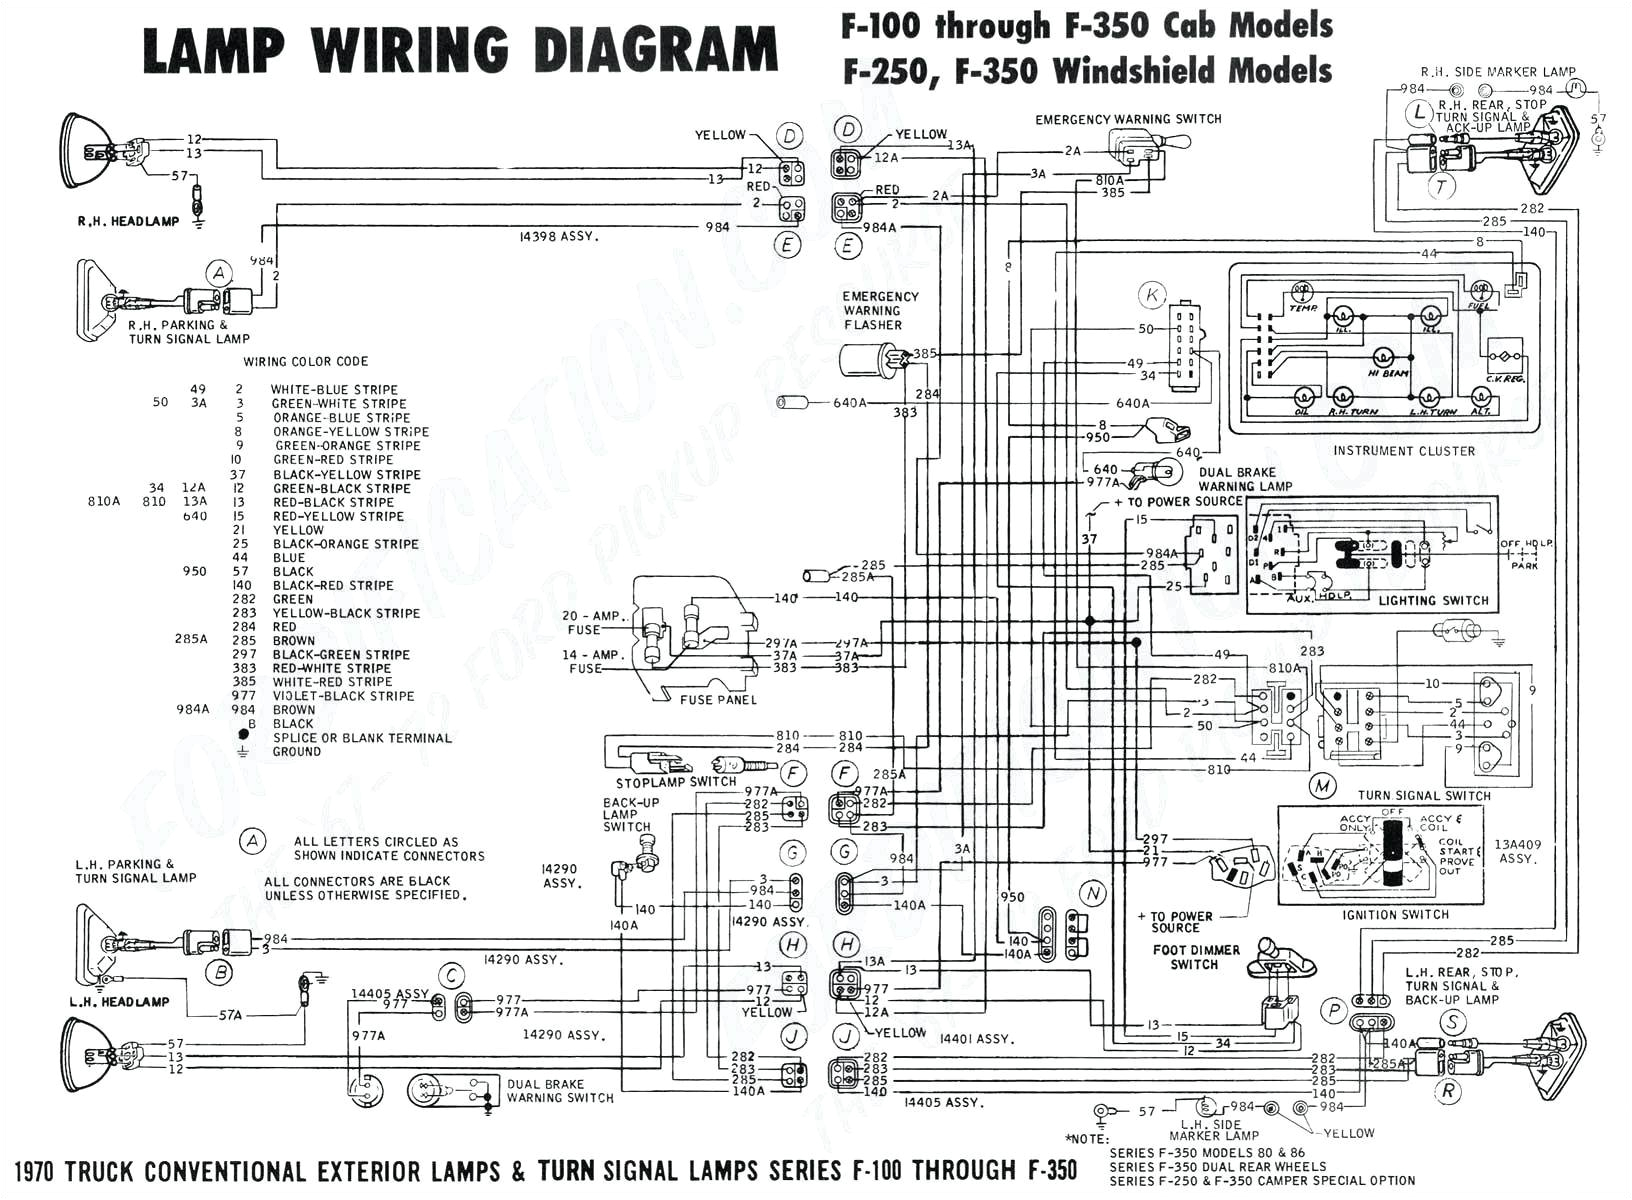 1981 honda express wiring diagram wiring diagram view mix 1981 honda express wiring diagram wiring diagram